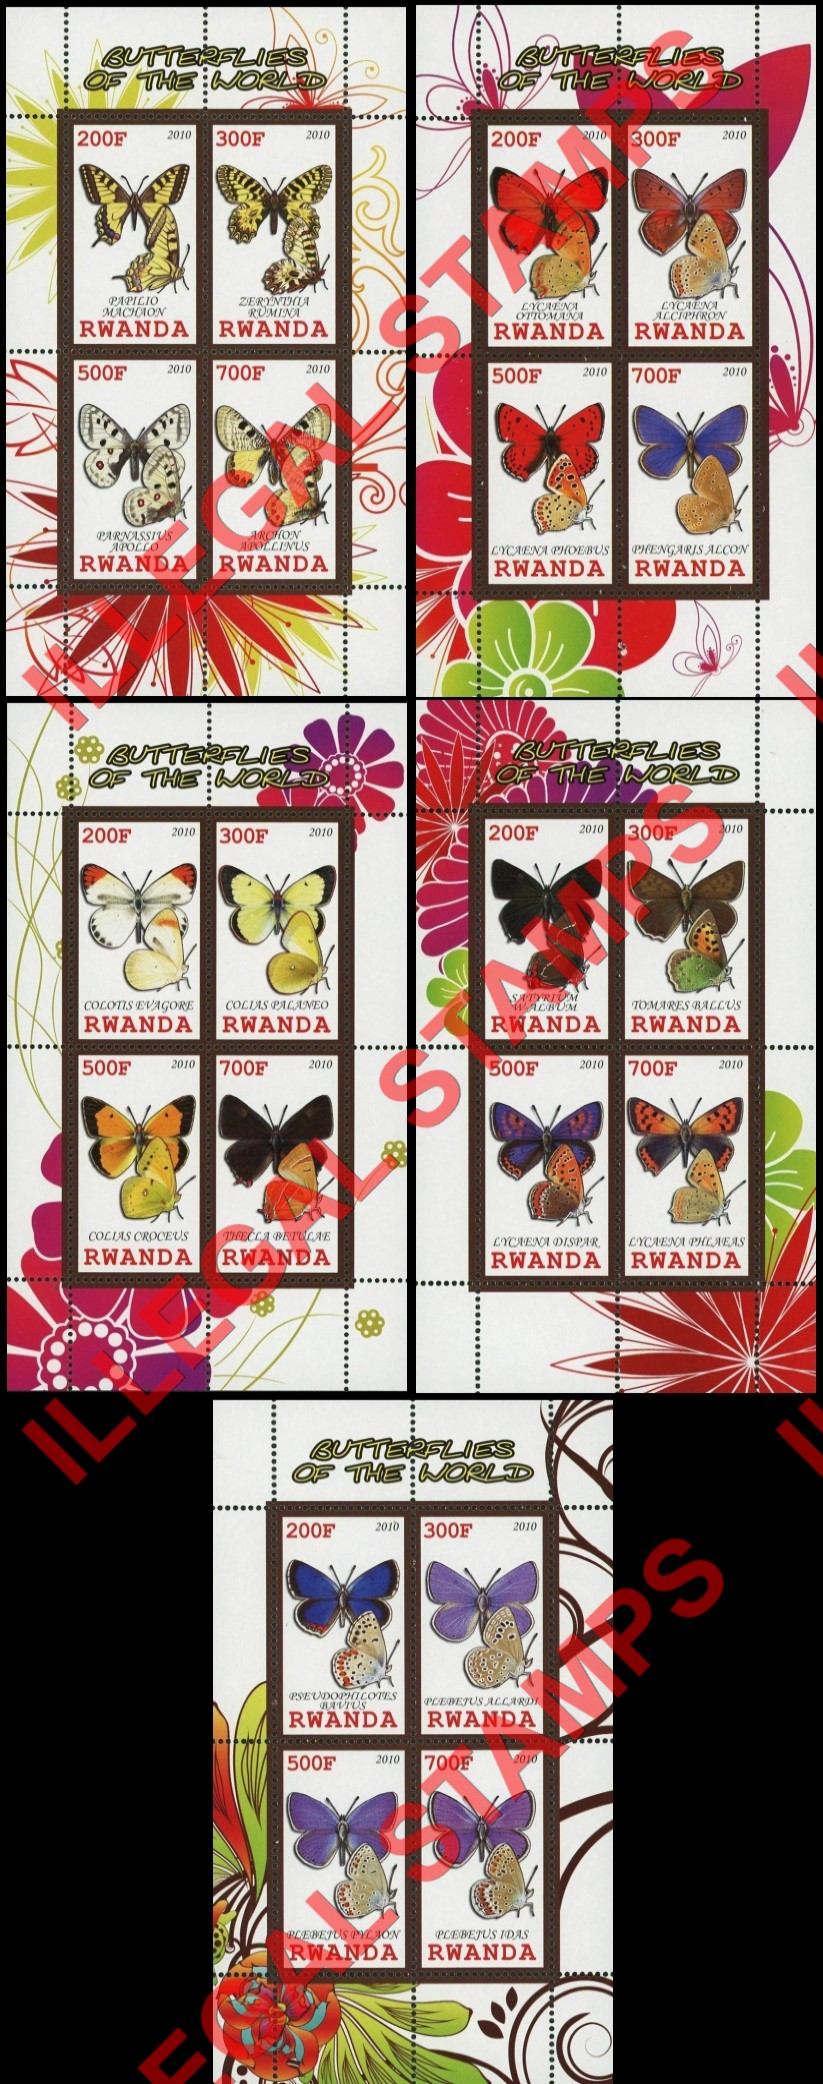 Rwanda 2010 Butterflies of the World Illegal Stamp Souvenir Sheets of 4